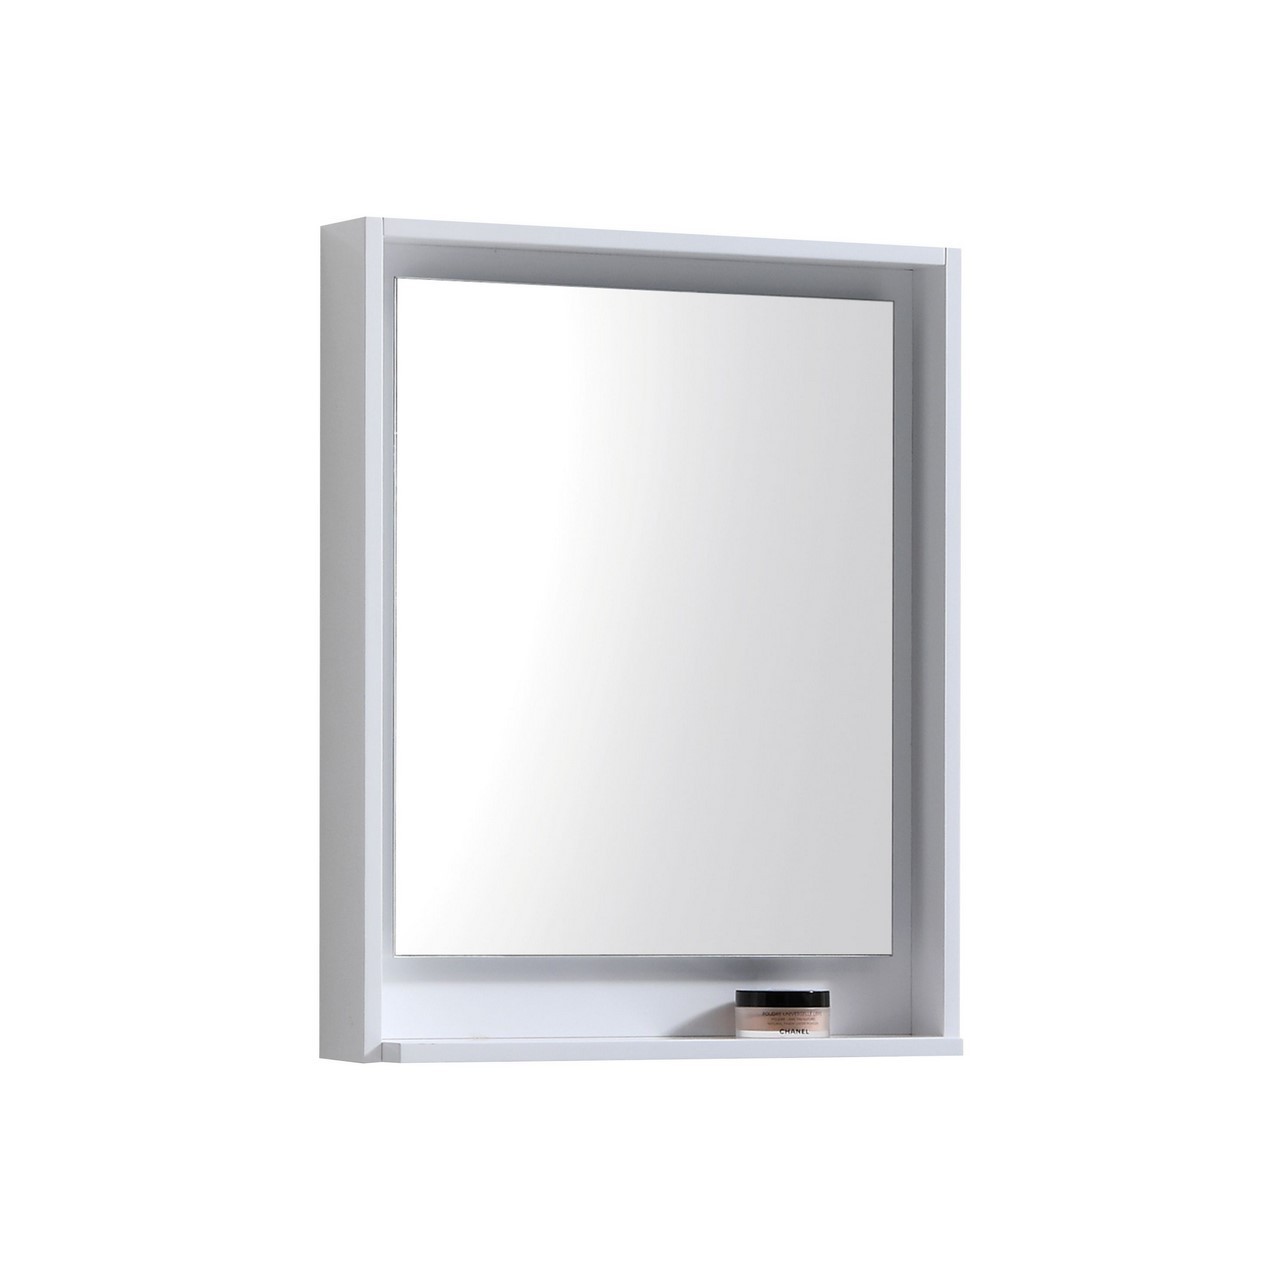 Bosco 24" Framed Mirror With Shelve - Gloss White Finish